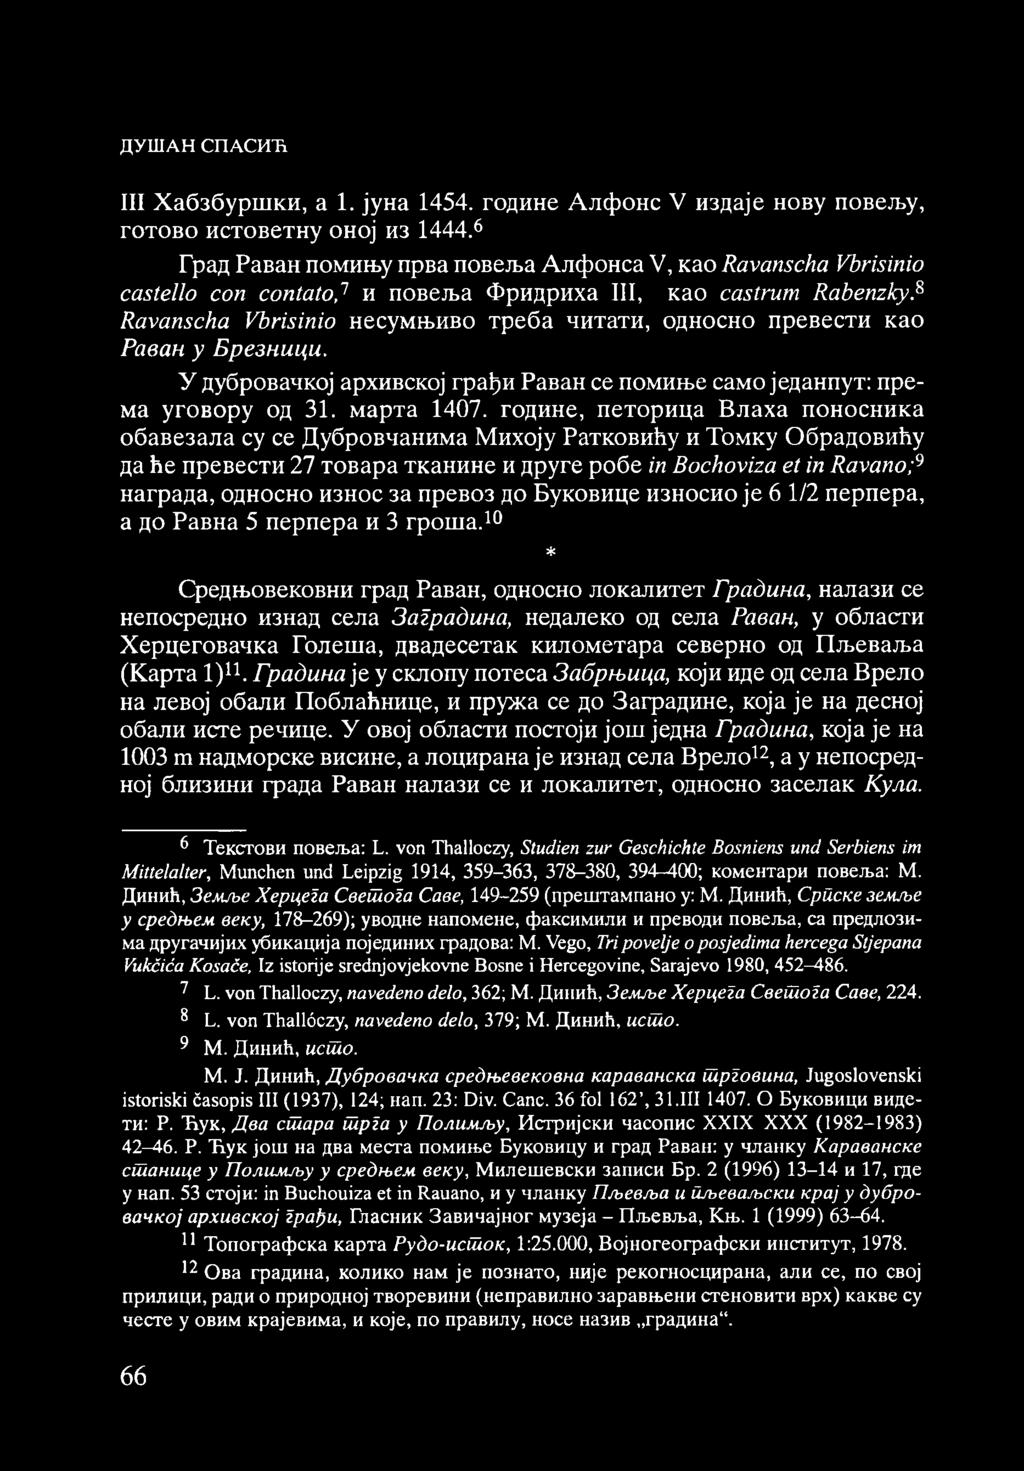 8 Ravanscha Vbrisinio несумњиво треба читати, односно превести као Раван у Брезници. У дубровачкој архивској грађи Раван се помиње само једанпут: према уговору од 31. марта 1407.